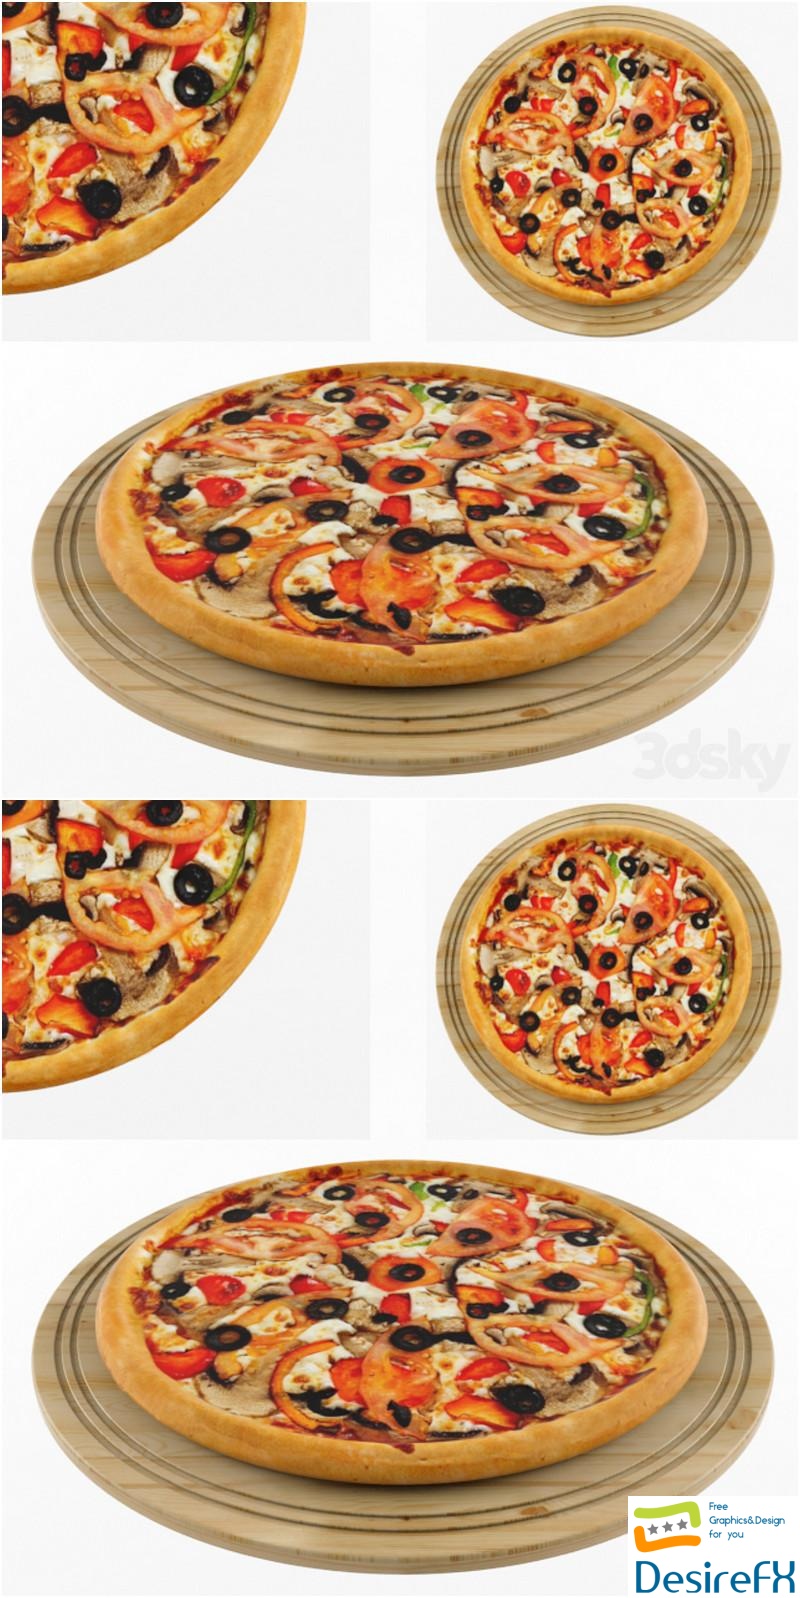 Pizza 3D Model